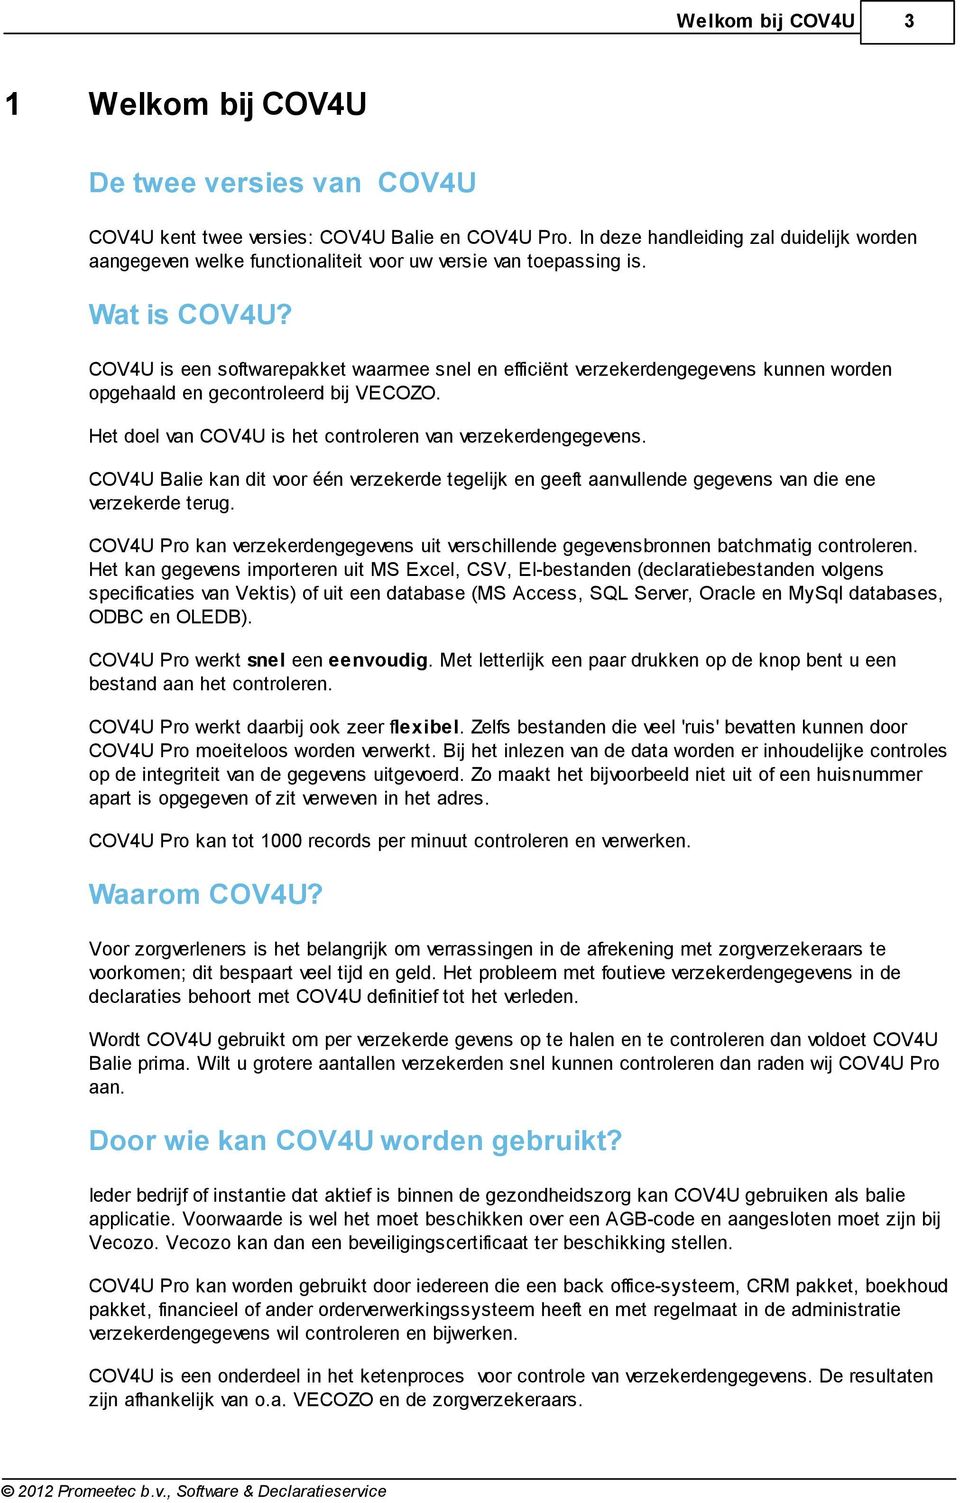 COV4U is een softwarepakket waarmee snel en efficiënt verzekerdengegevens kunnen worden opgehaald en gecontroleerd bij VECOZO. Het doel van COV4U is het controleren van verzekerdengegevens.